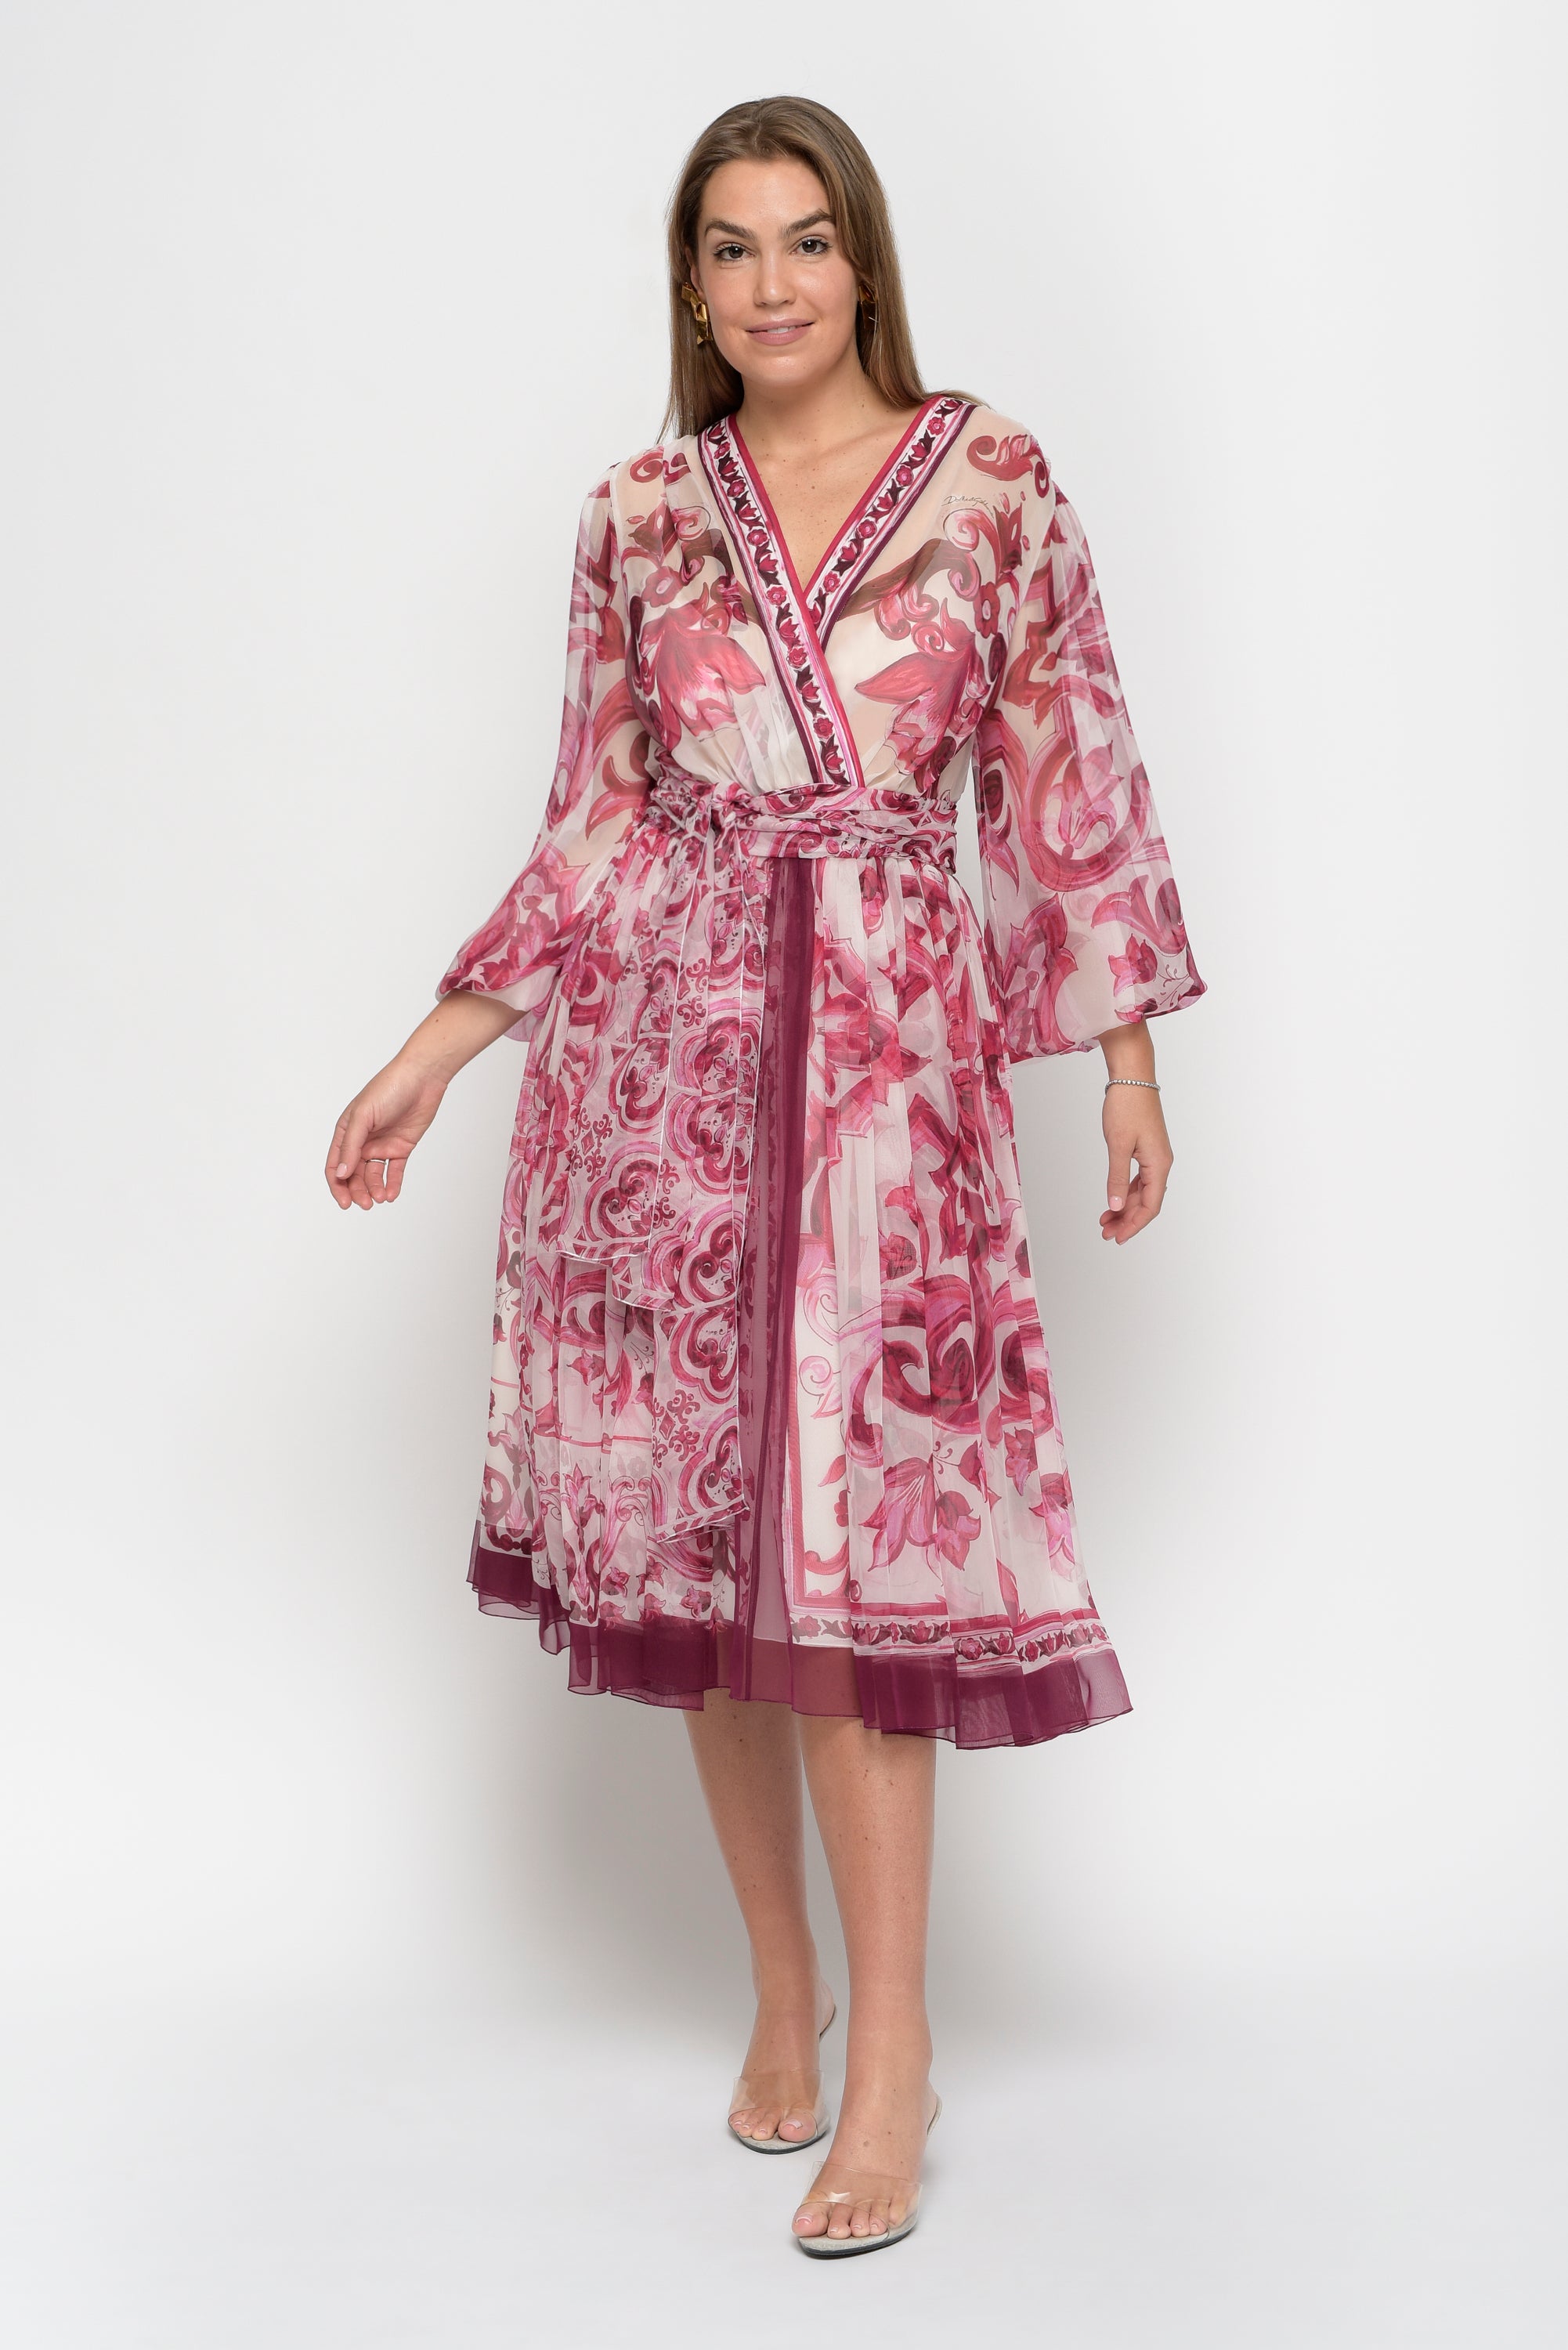 Dolce & Gabbana Black Rose Printed Silk Kimono Dress S Dolce & Gabbana